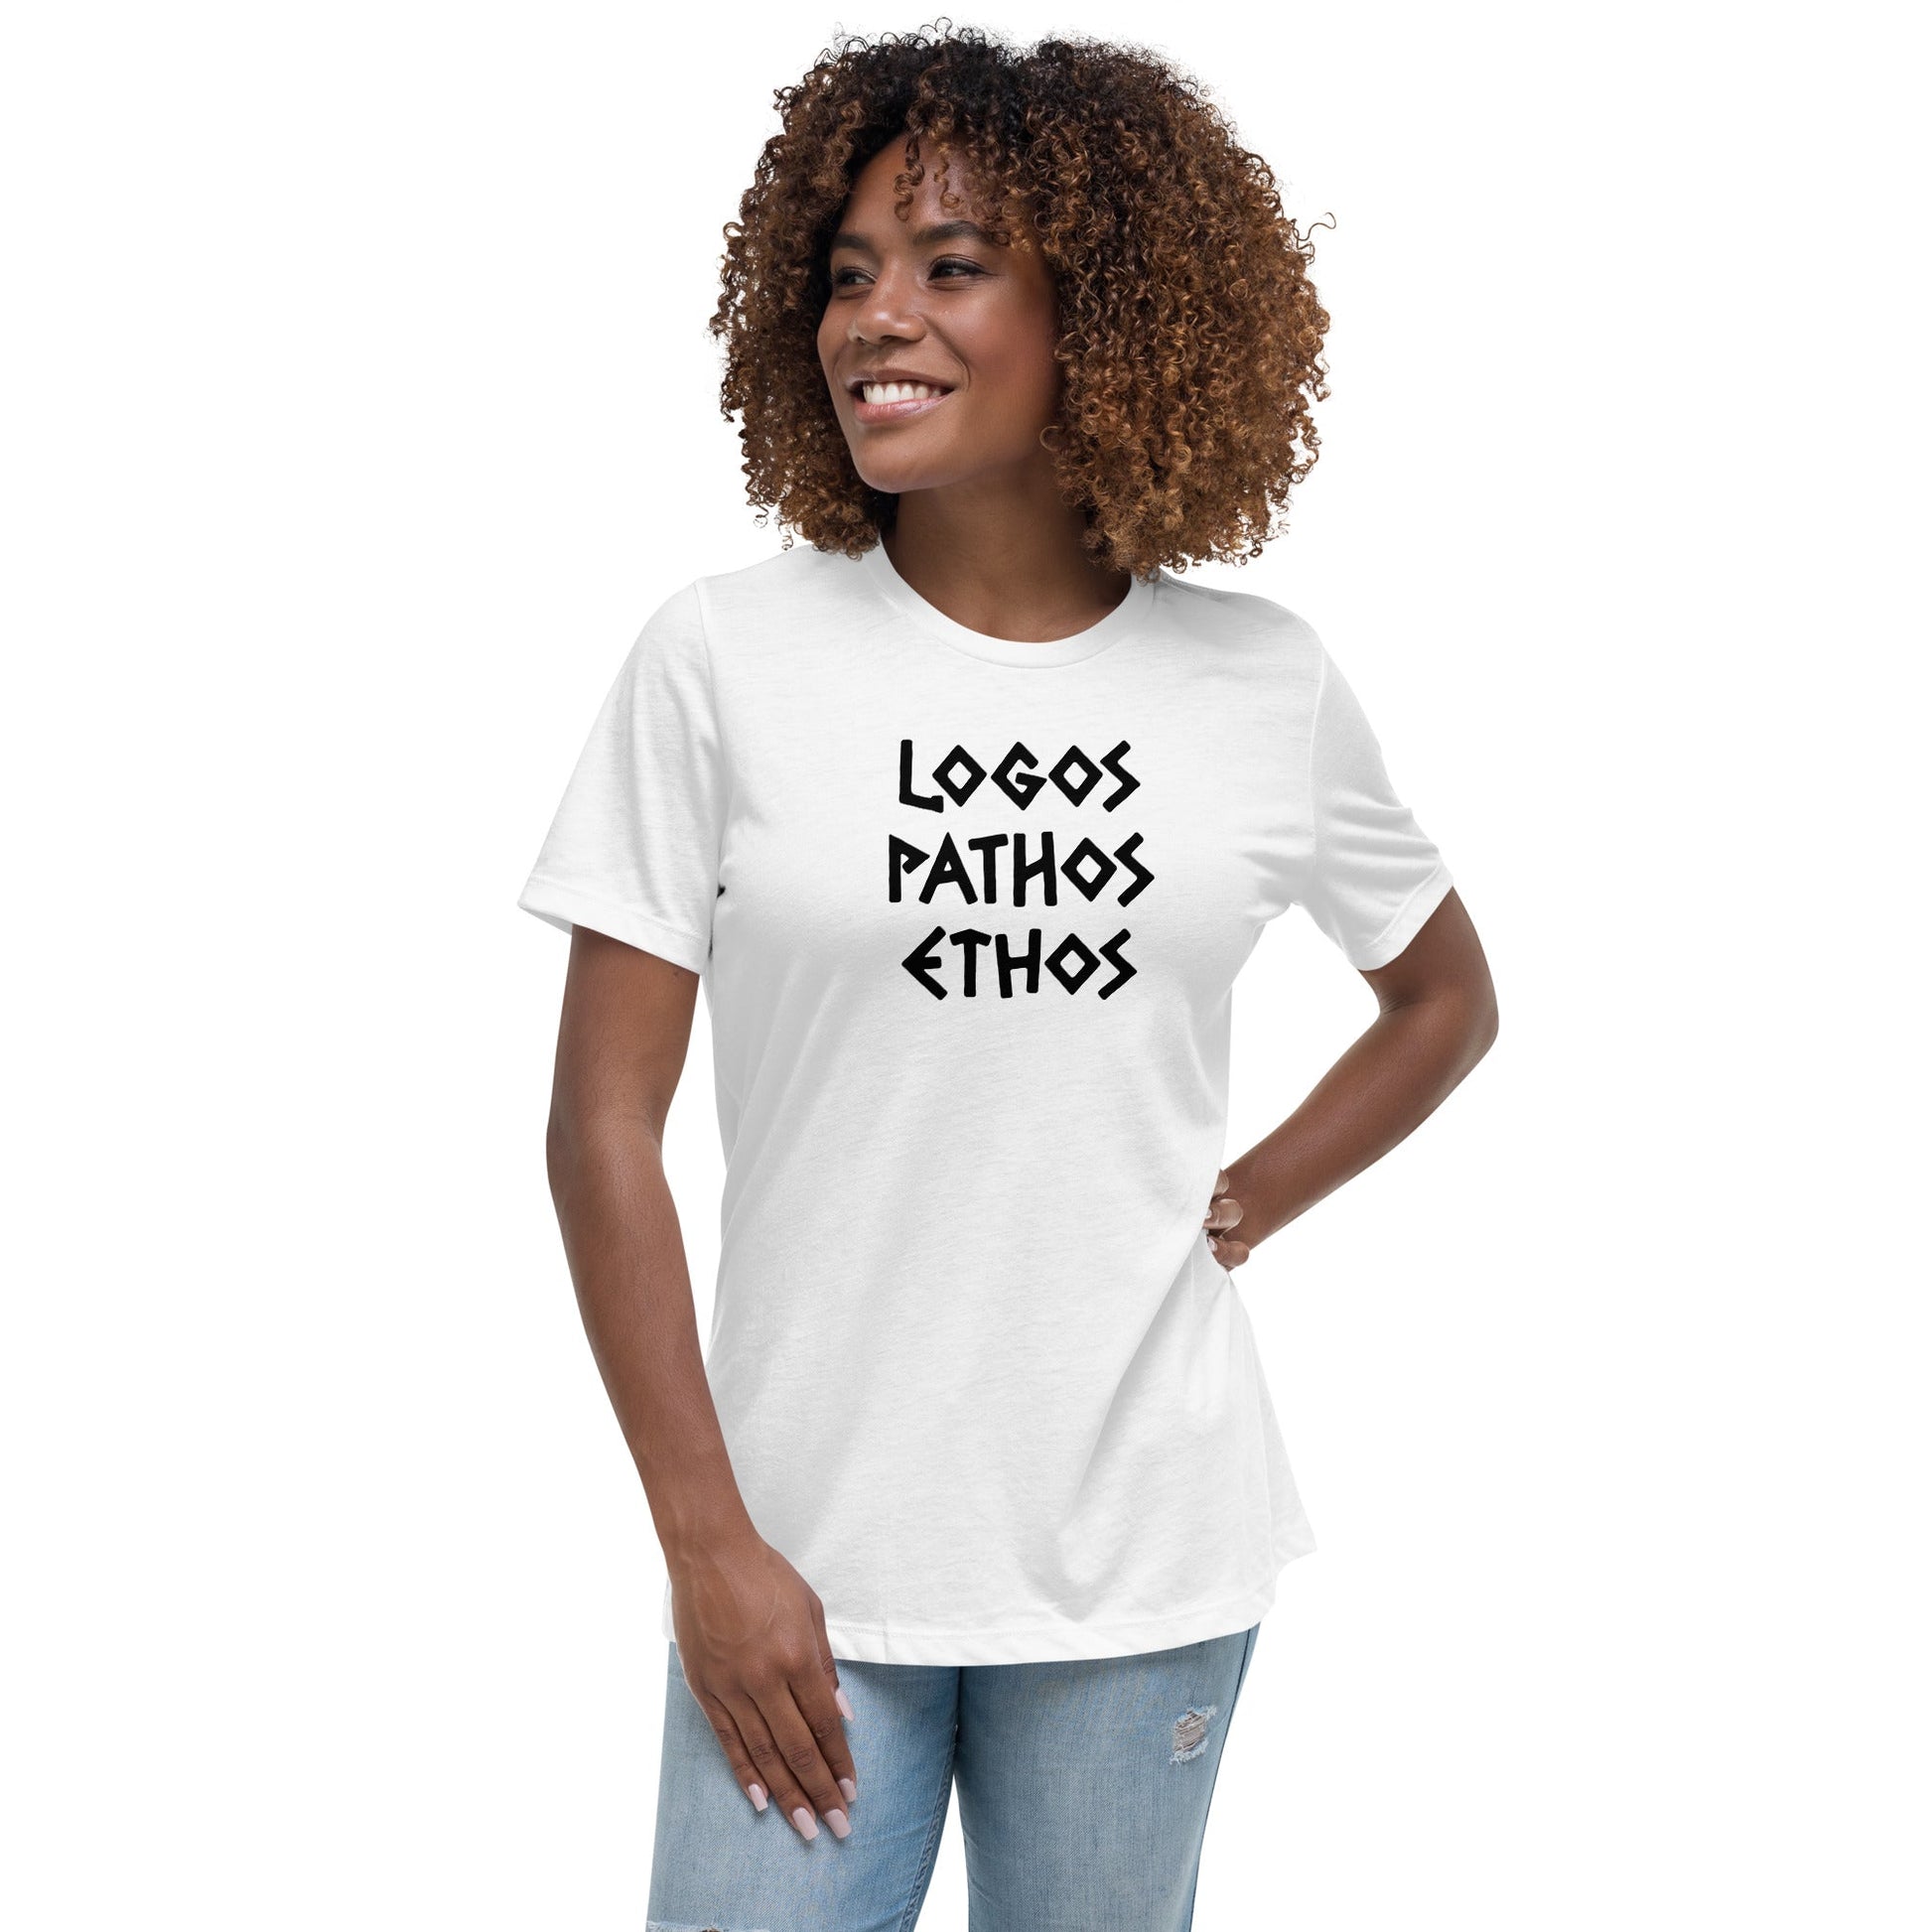 Logos Pathos Ethos - Women's T-Shirt